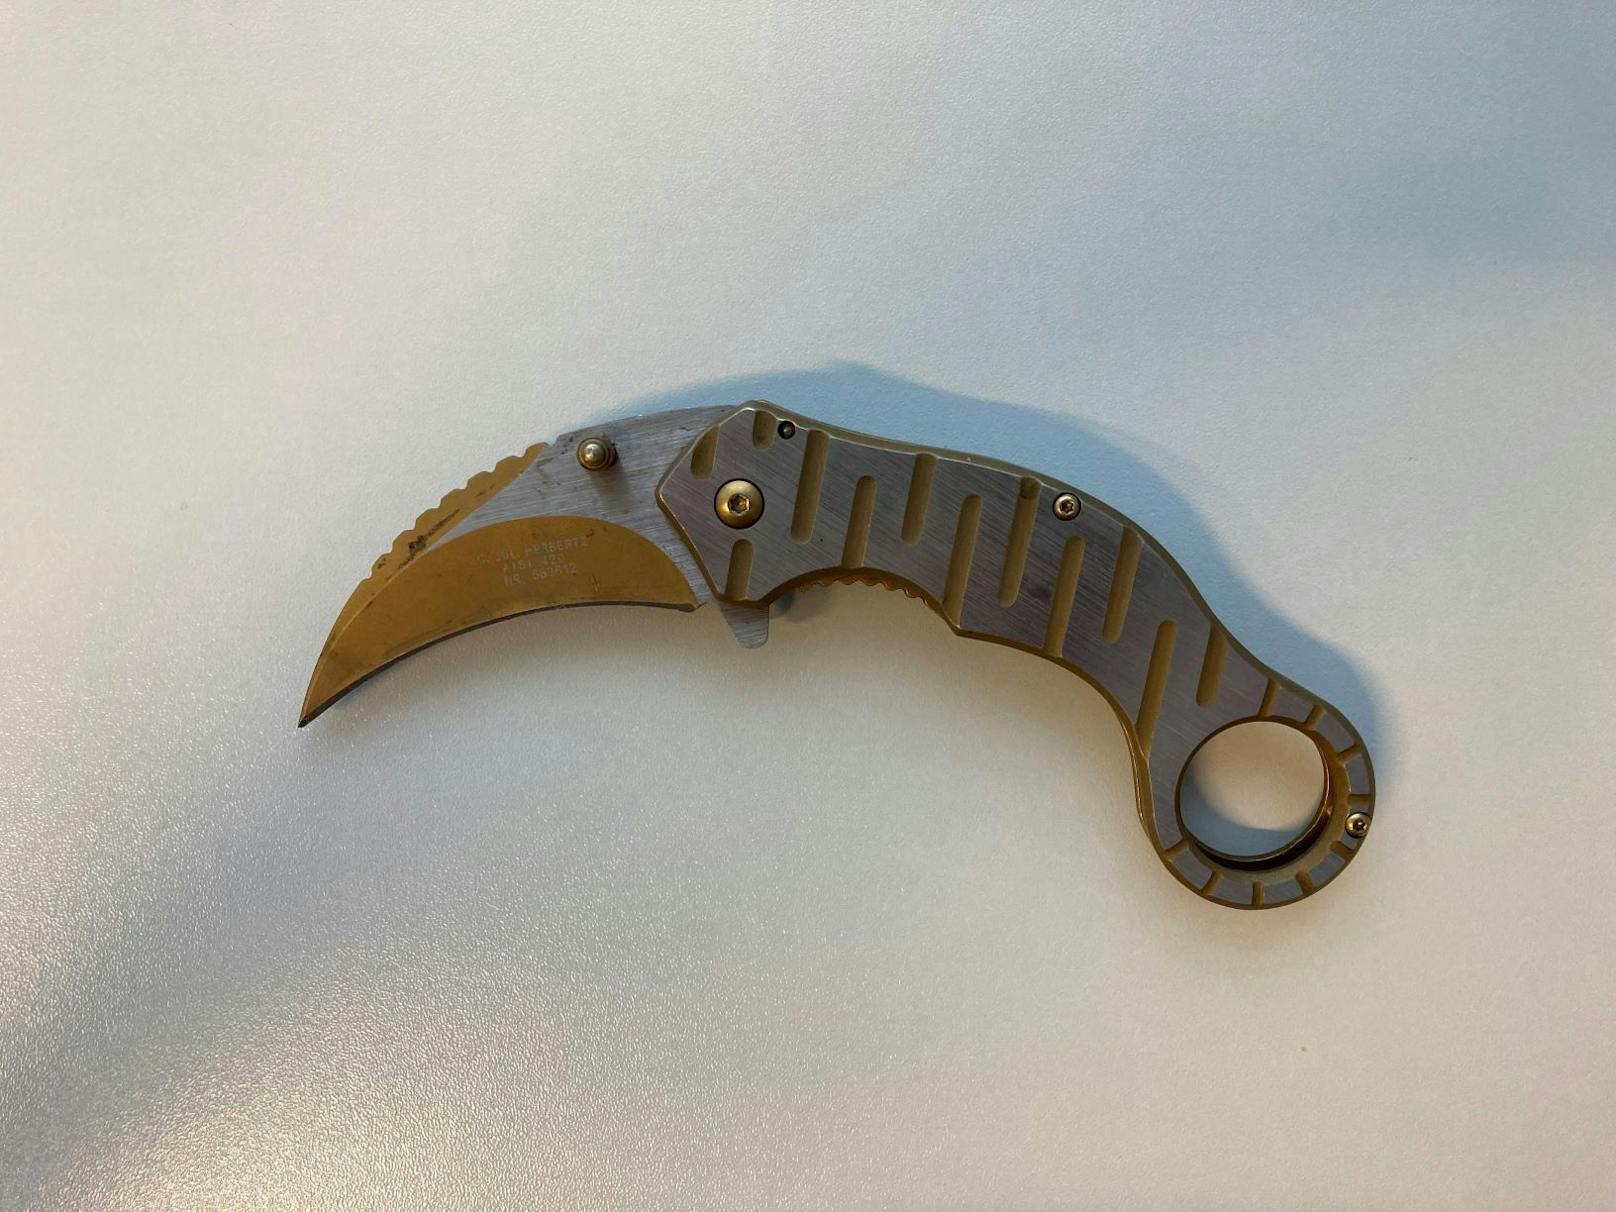 Mit diesem Messer soll das Duo die Angestellte bedroht haben.